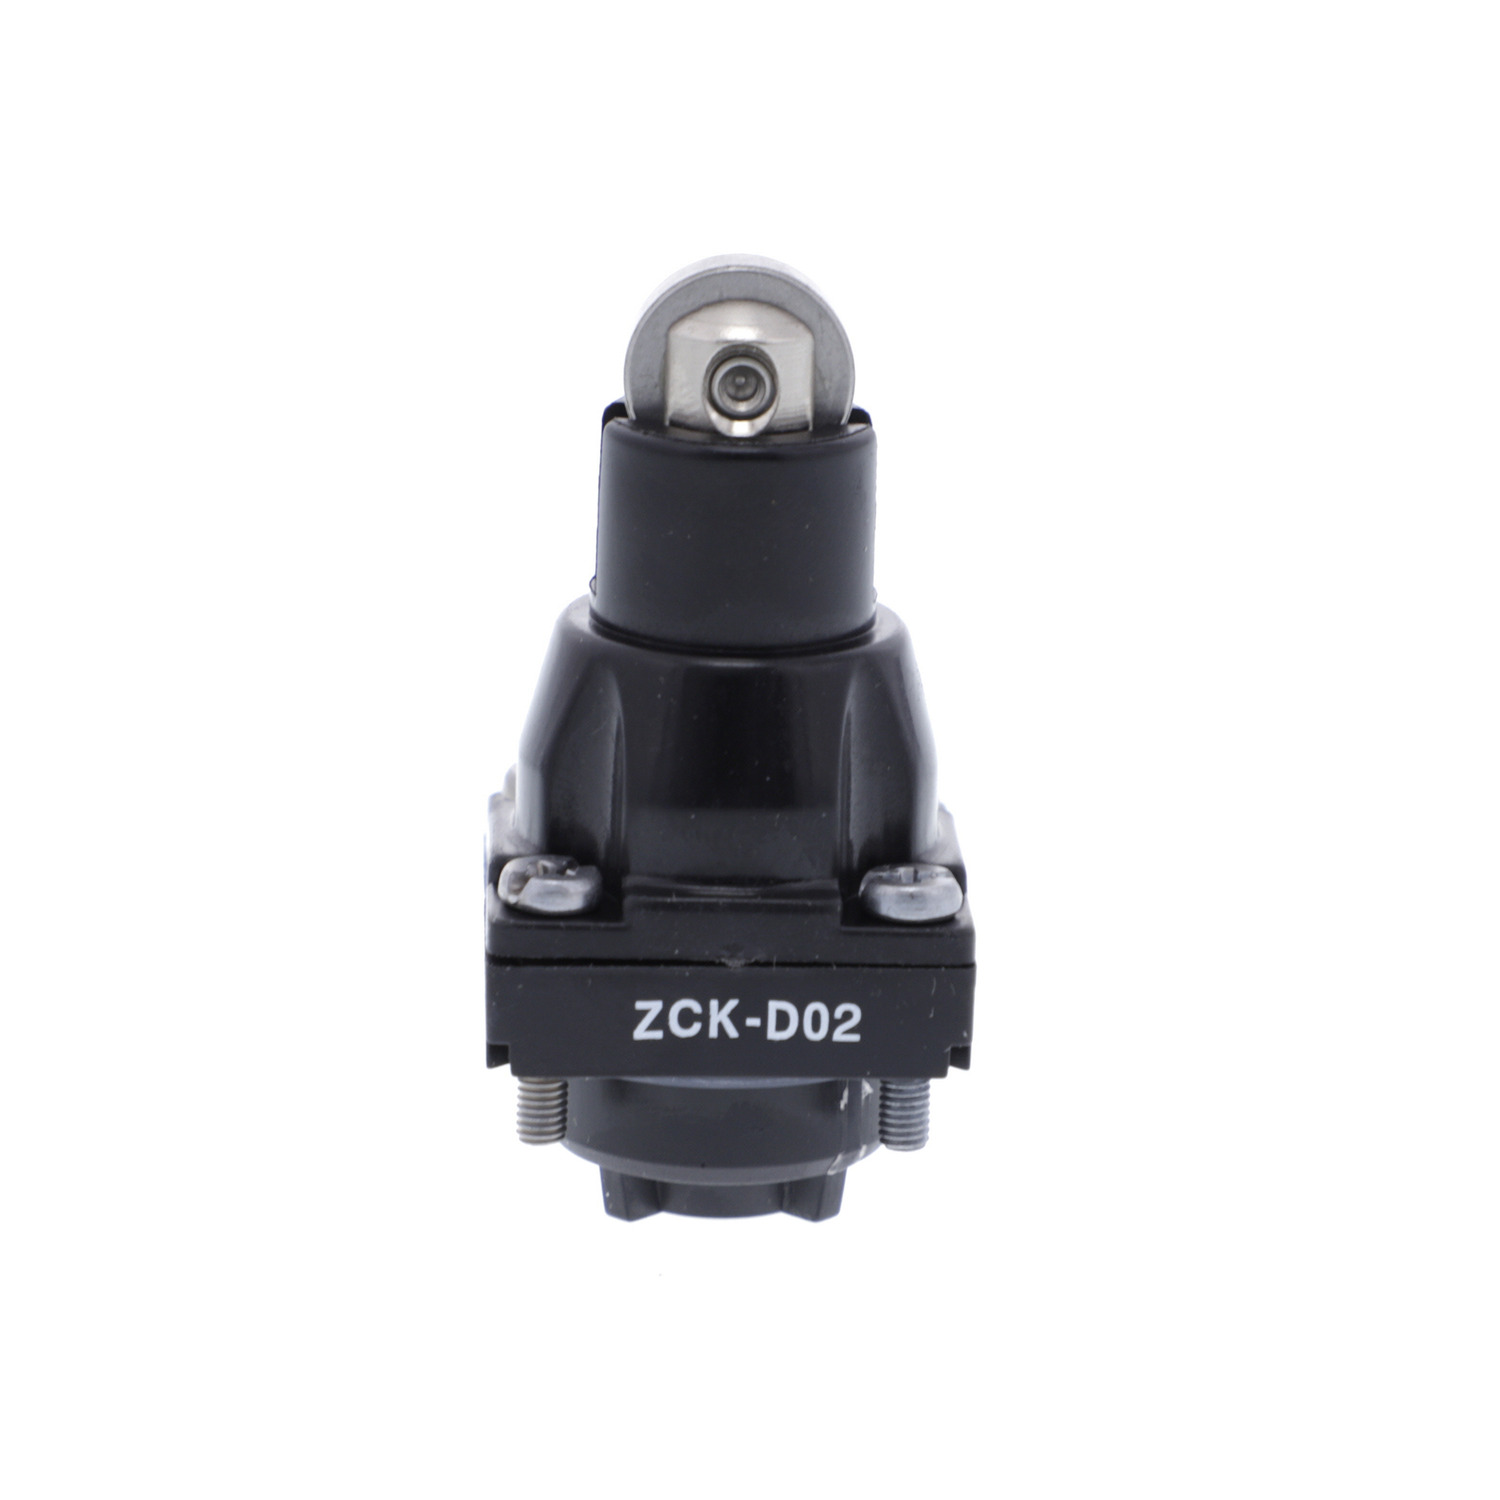 Limit switch head, Limit switches XC Standard, ZCKD, steel roller plunger